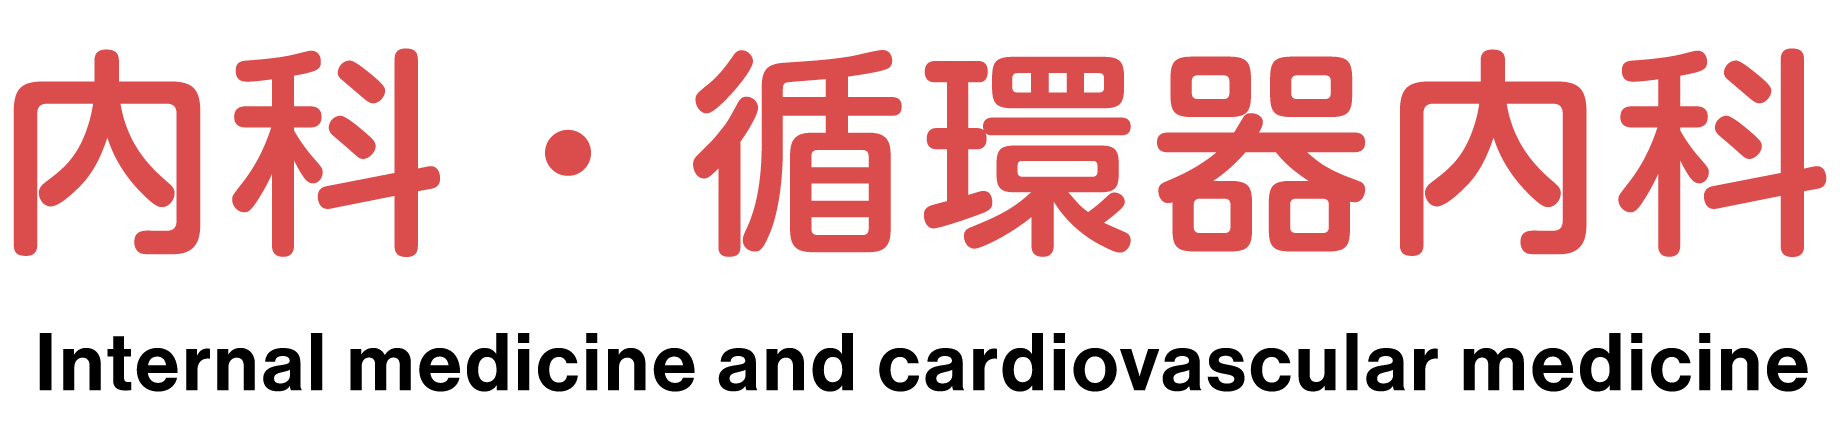 内科・循環器内科 Internal medicine and cardiovascular medicine